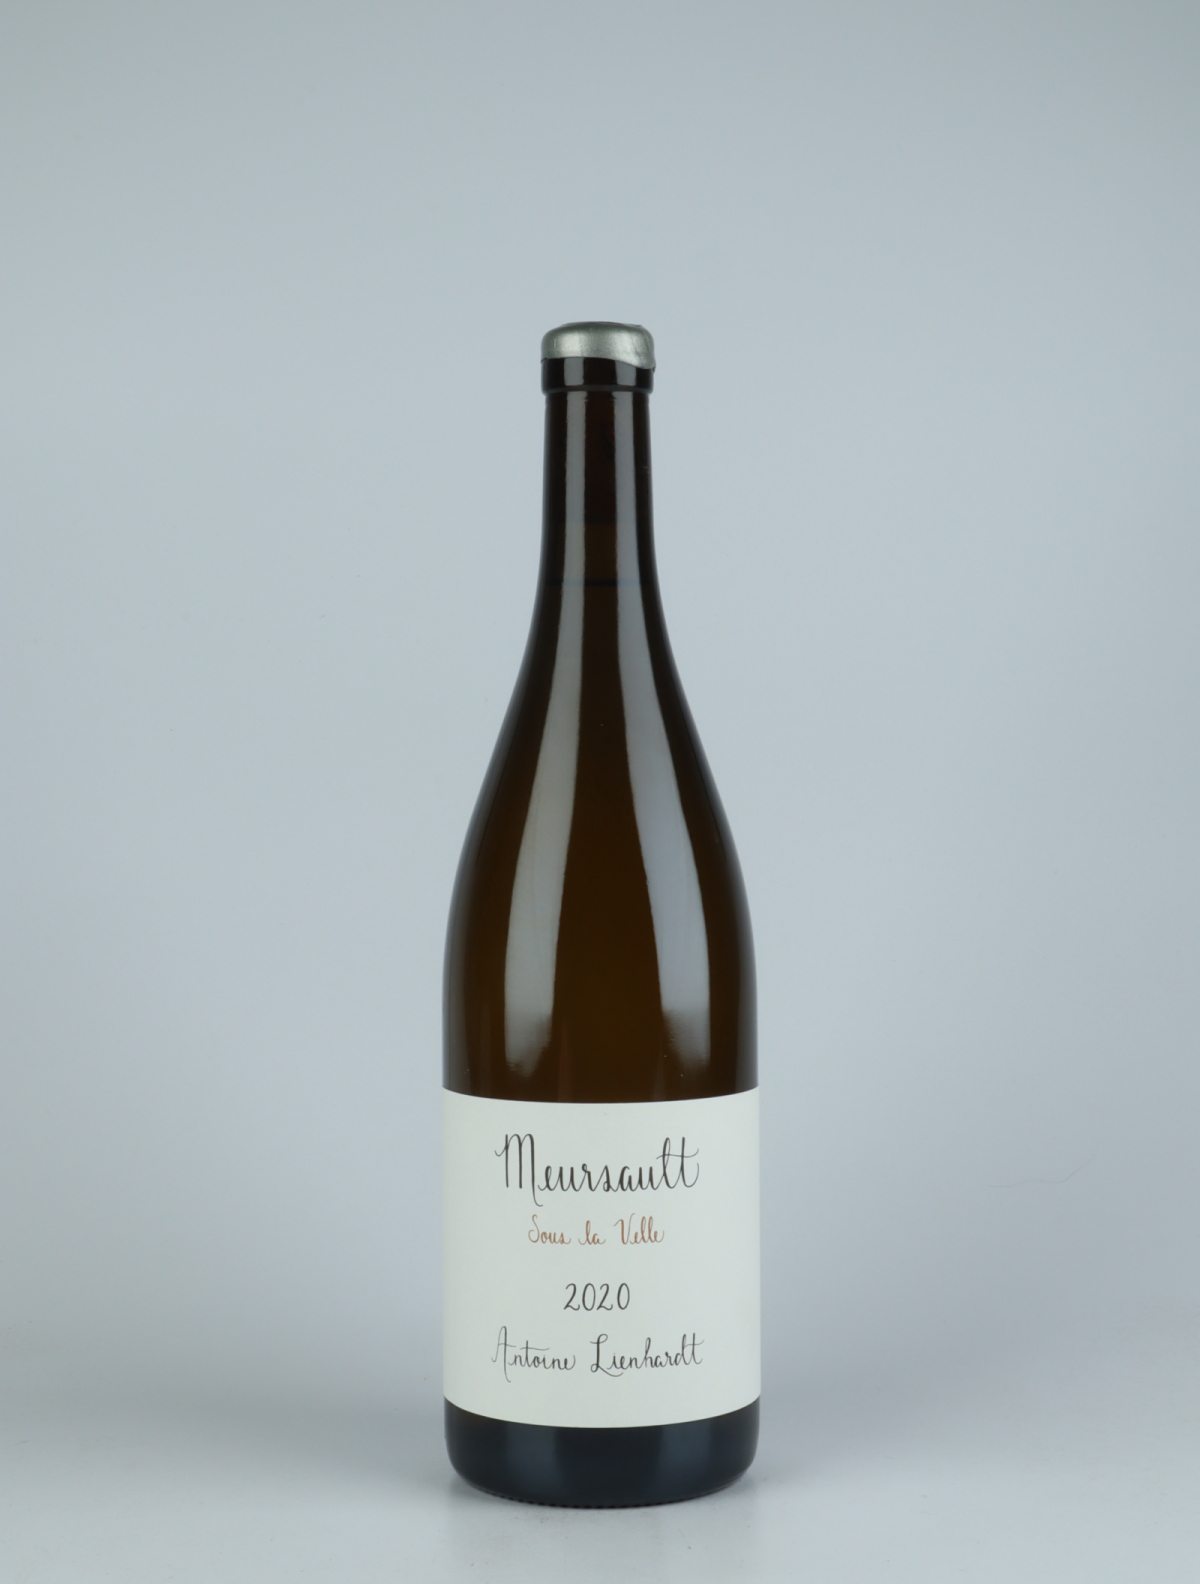 En flaske 2020 Meursault - Sous la Velle Hvidvin fra Antoine Lienhardt, Bourgogne i Frankrig